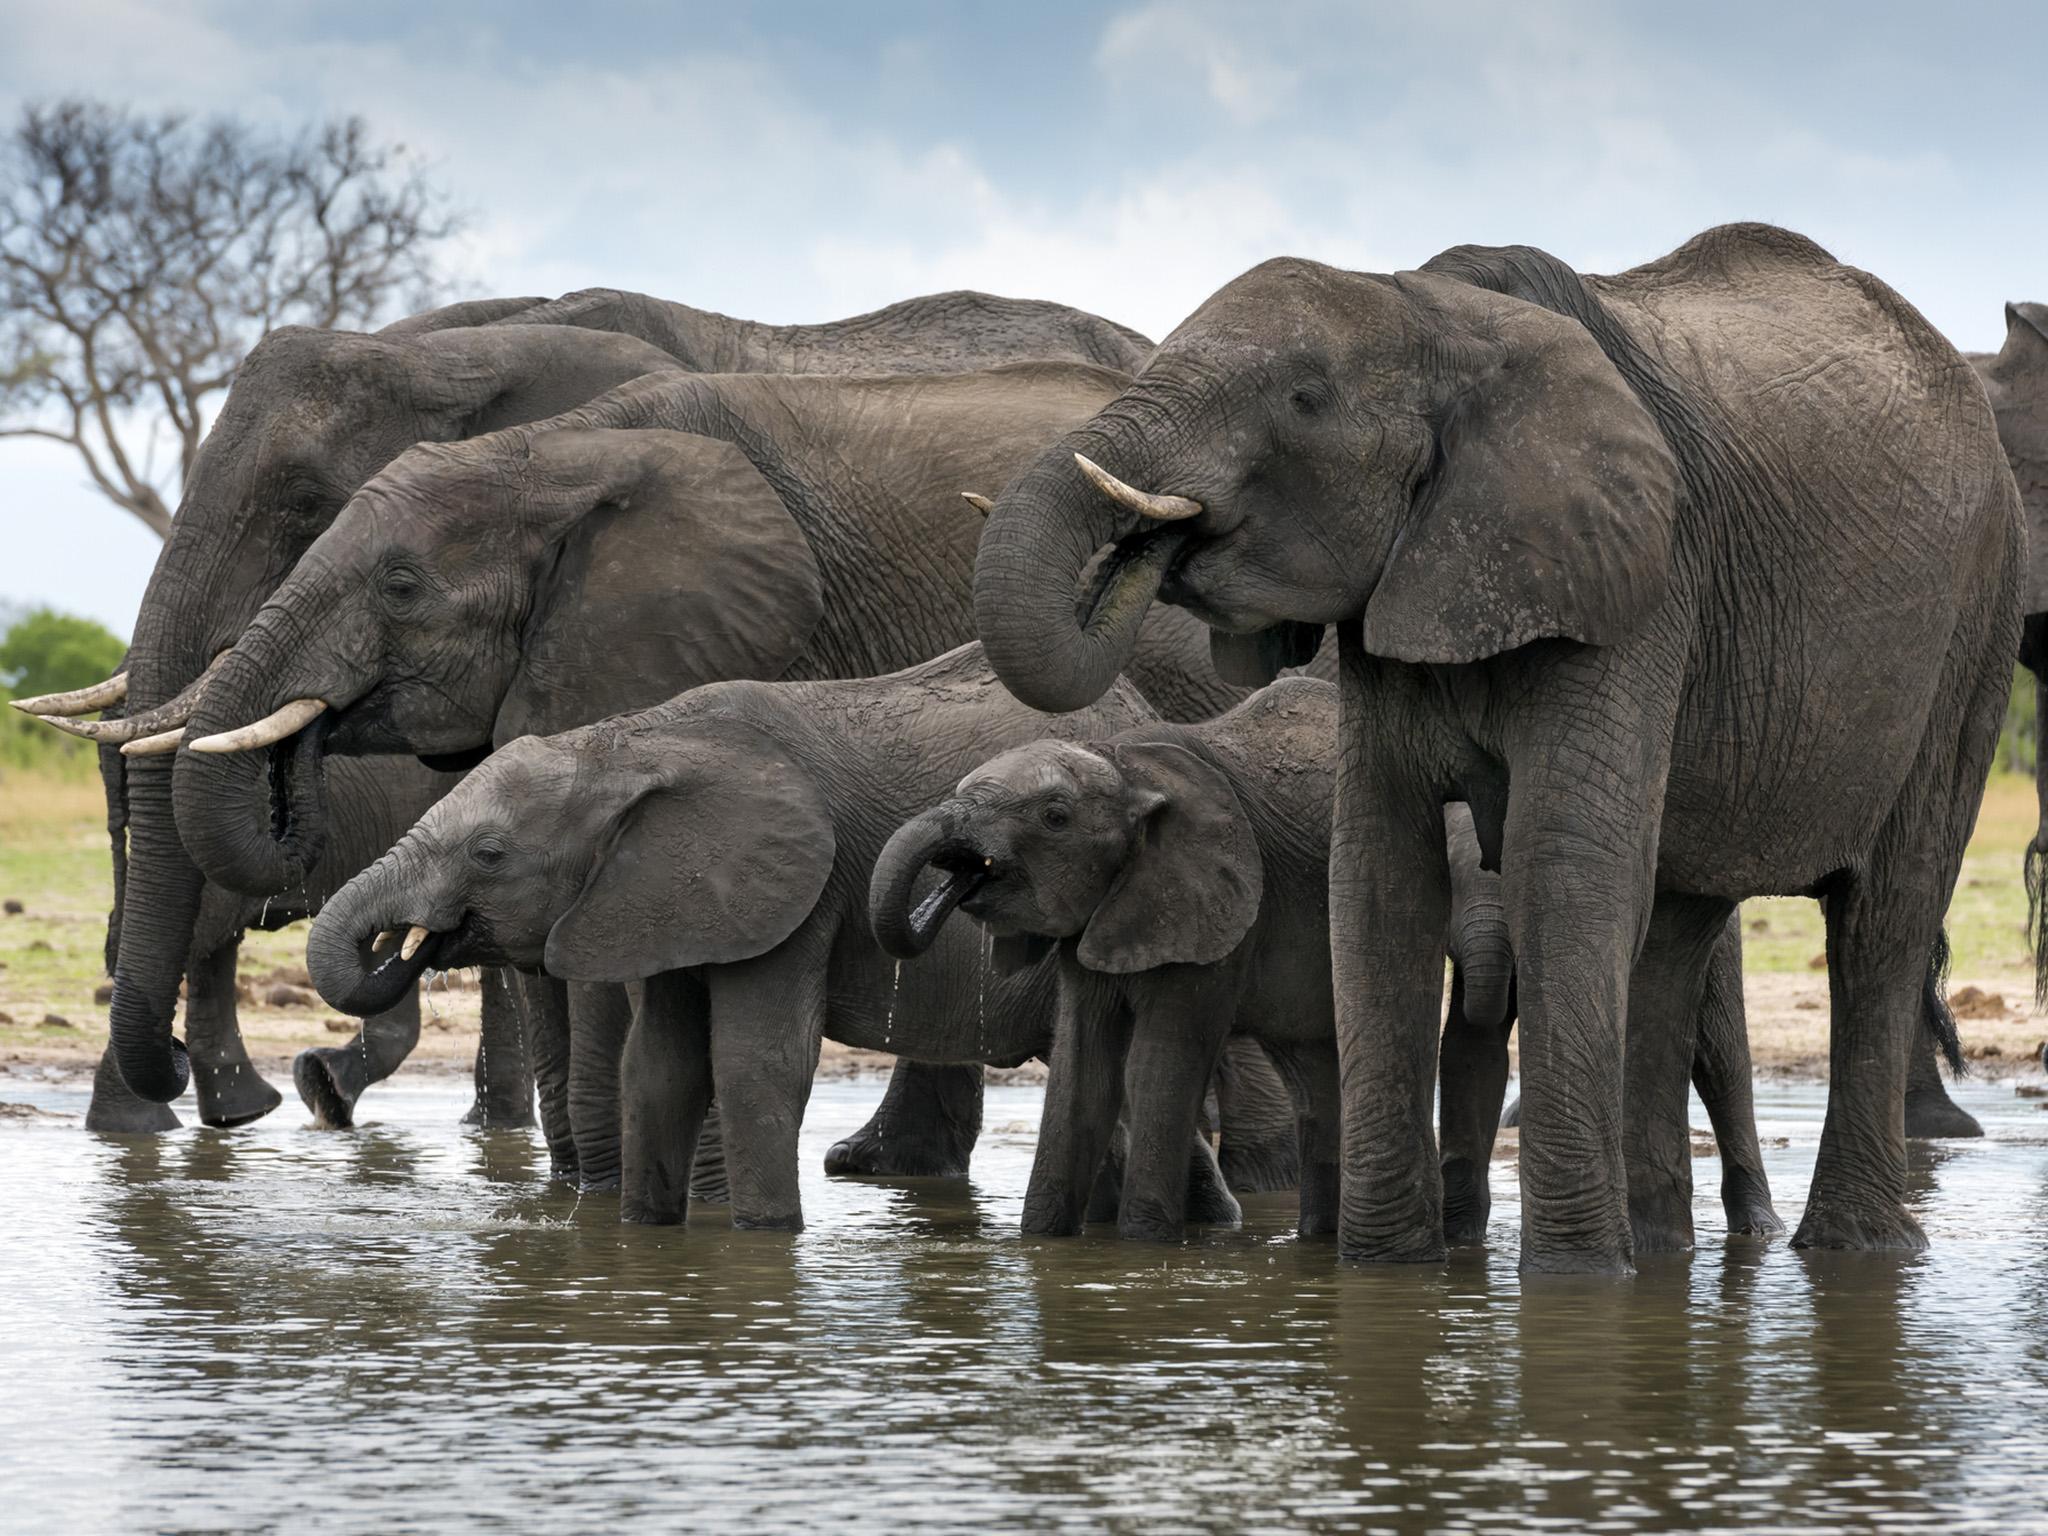 Este caso se da después de que en Botsuana han muerto al menos 350 elefantes desde mayo sin que se sepa la razón de su deceso